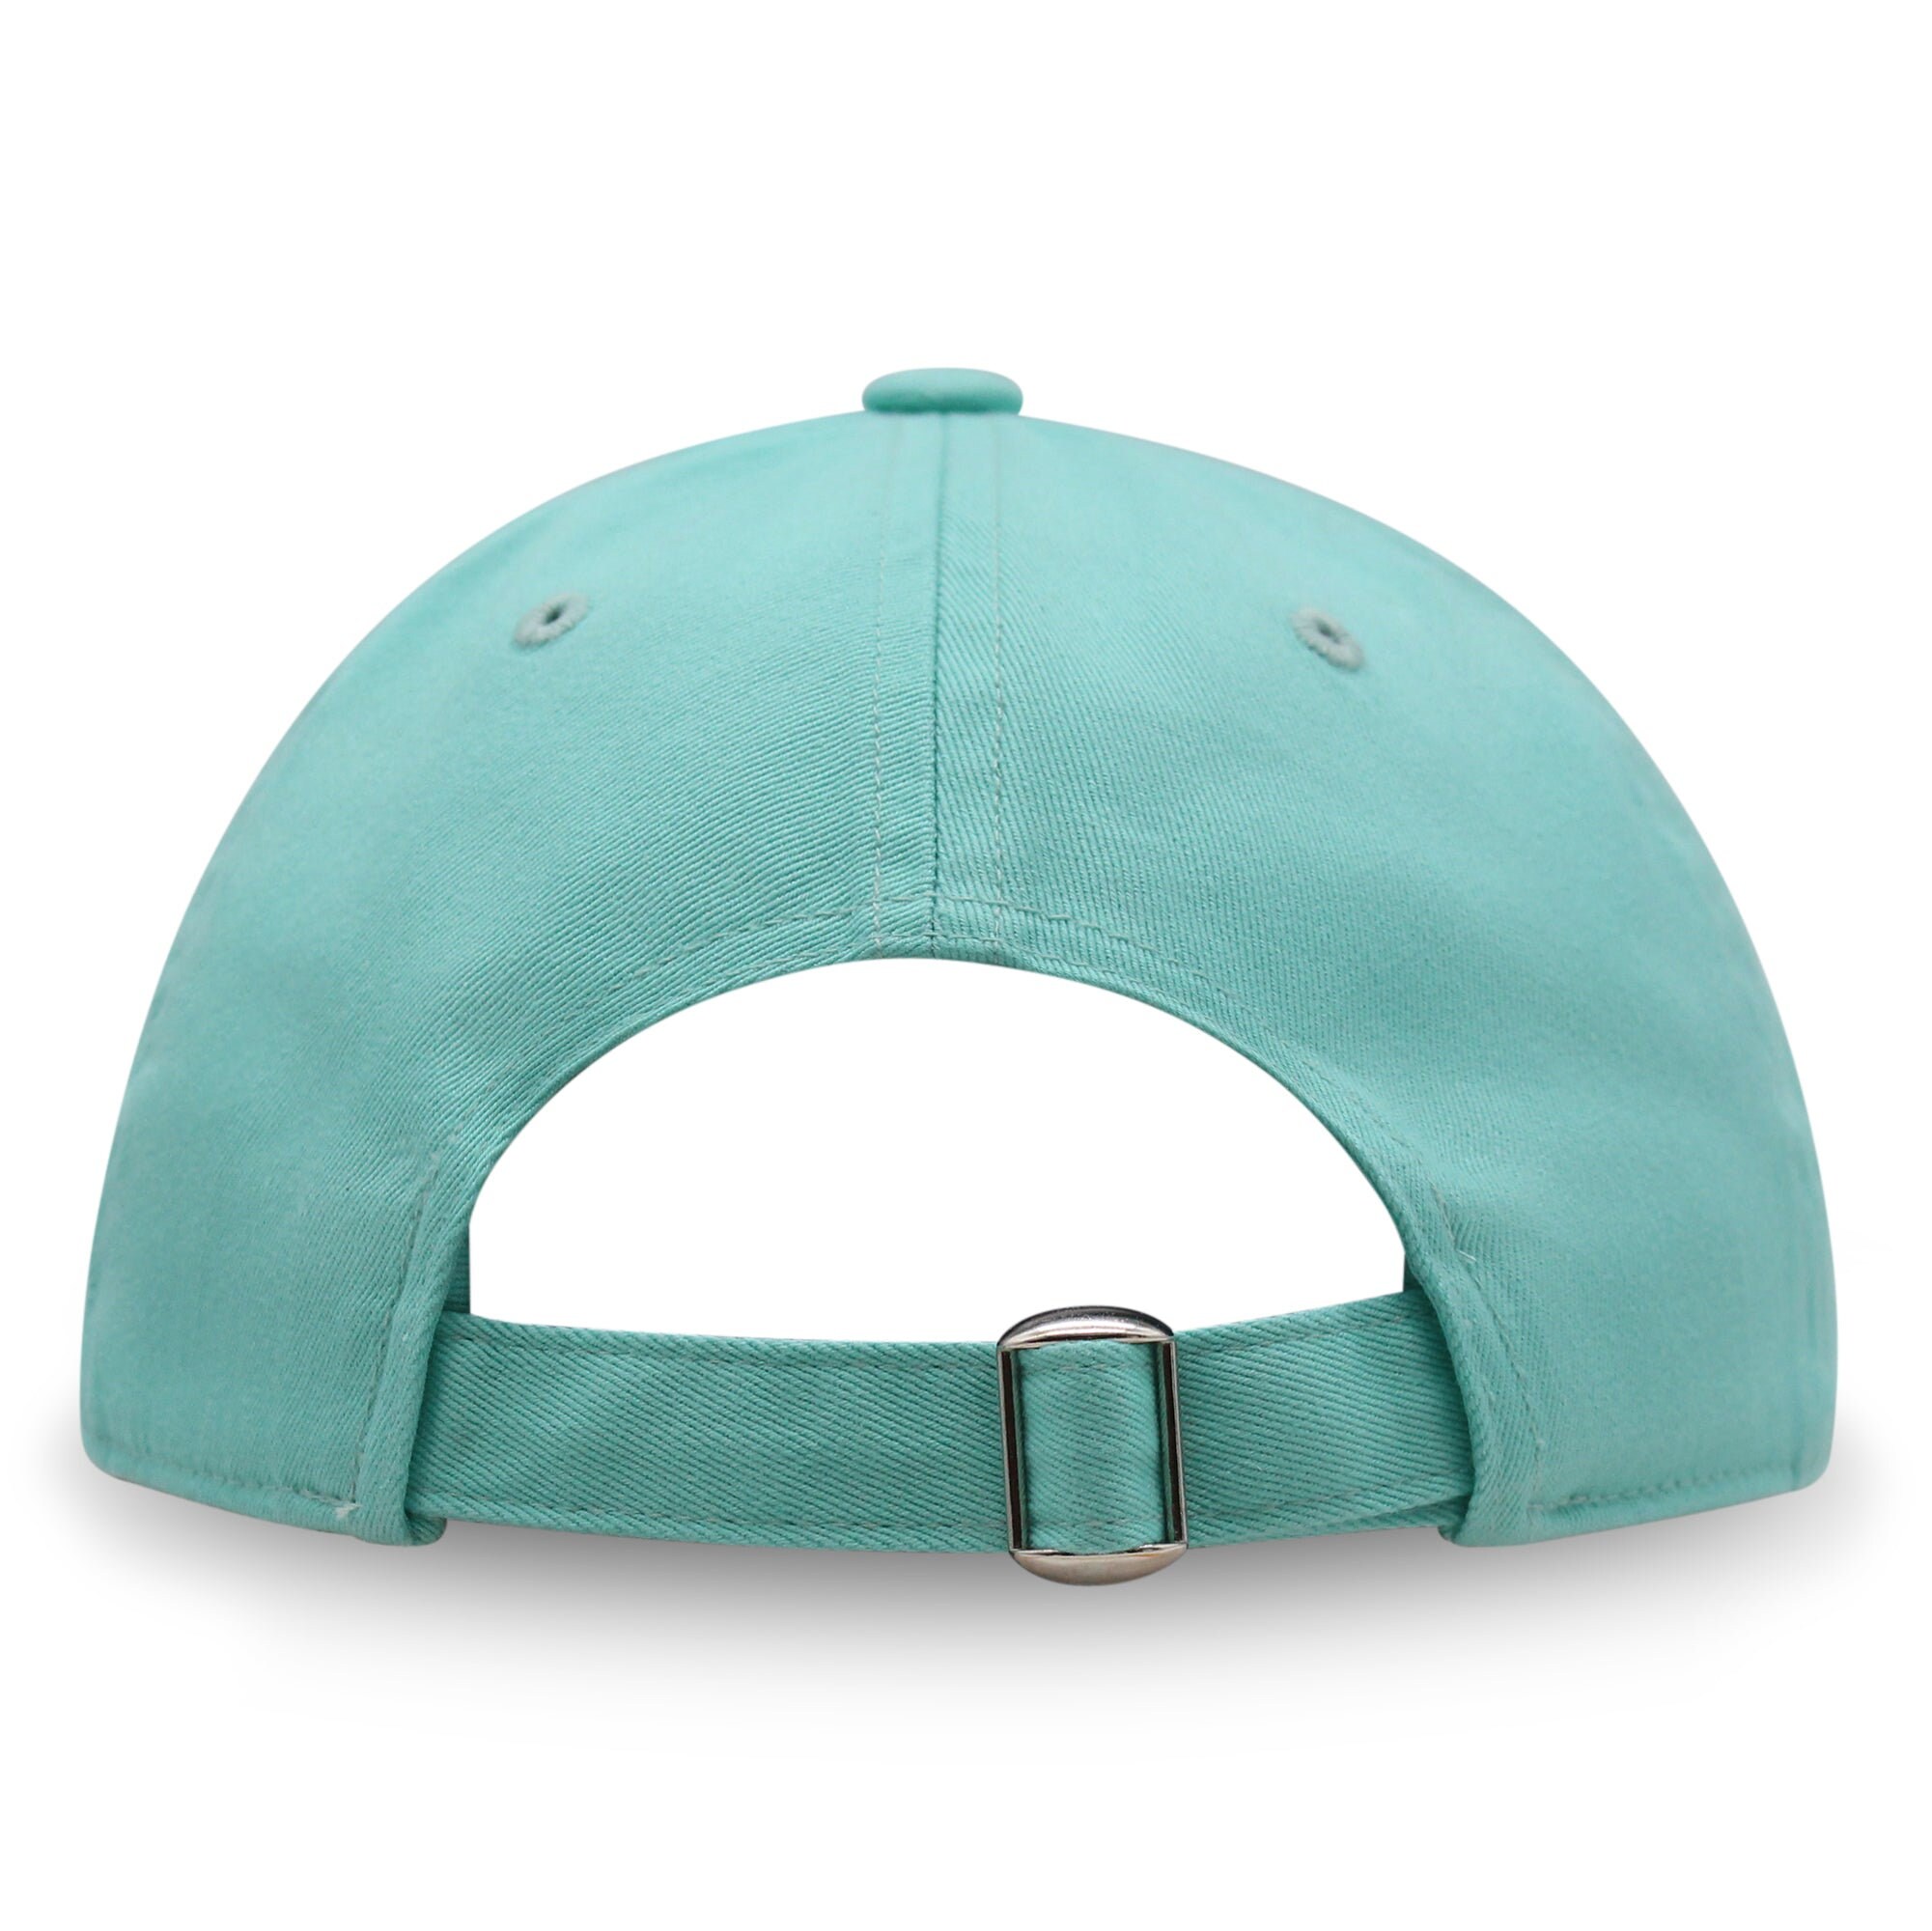 Boba Tea  Premium Dad Hat Embroidered Baseball Cap Pearl